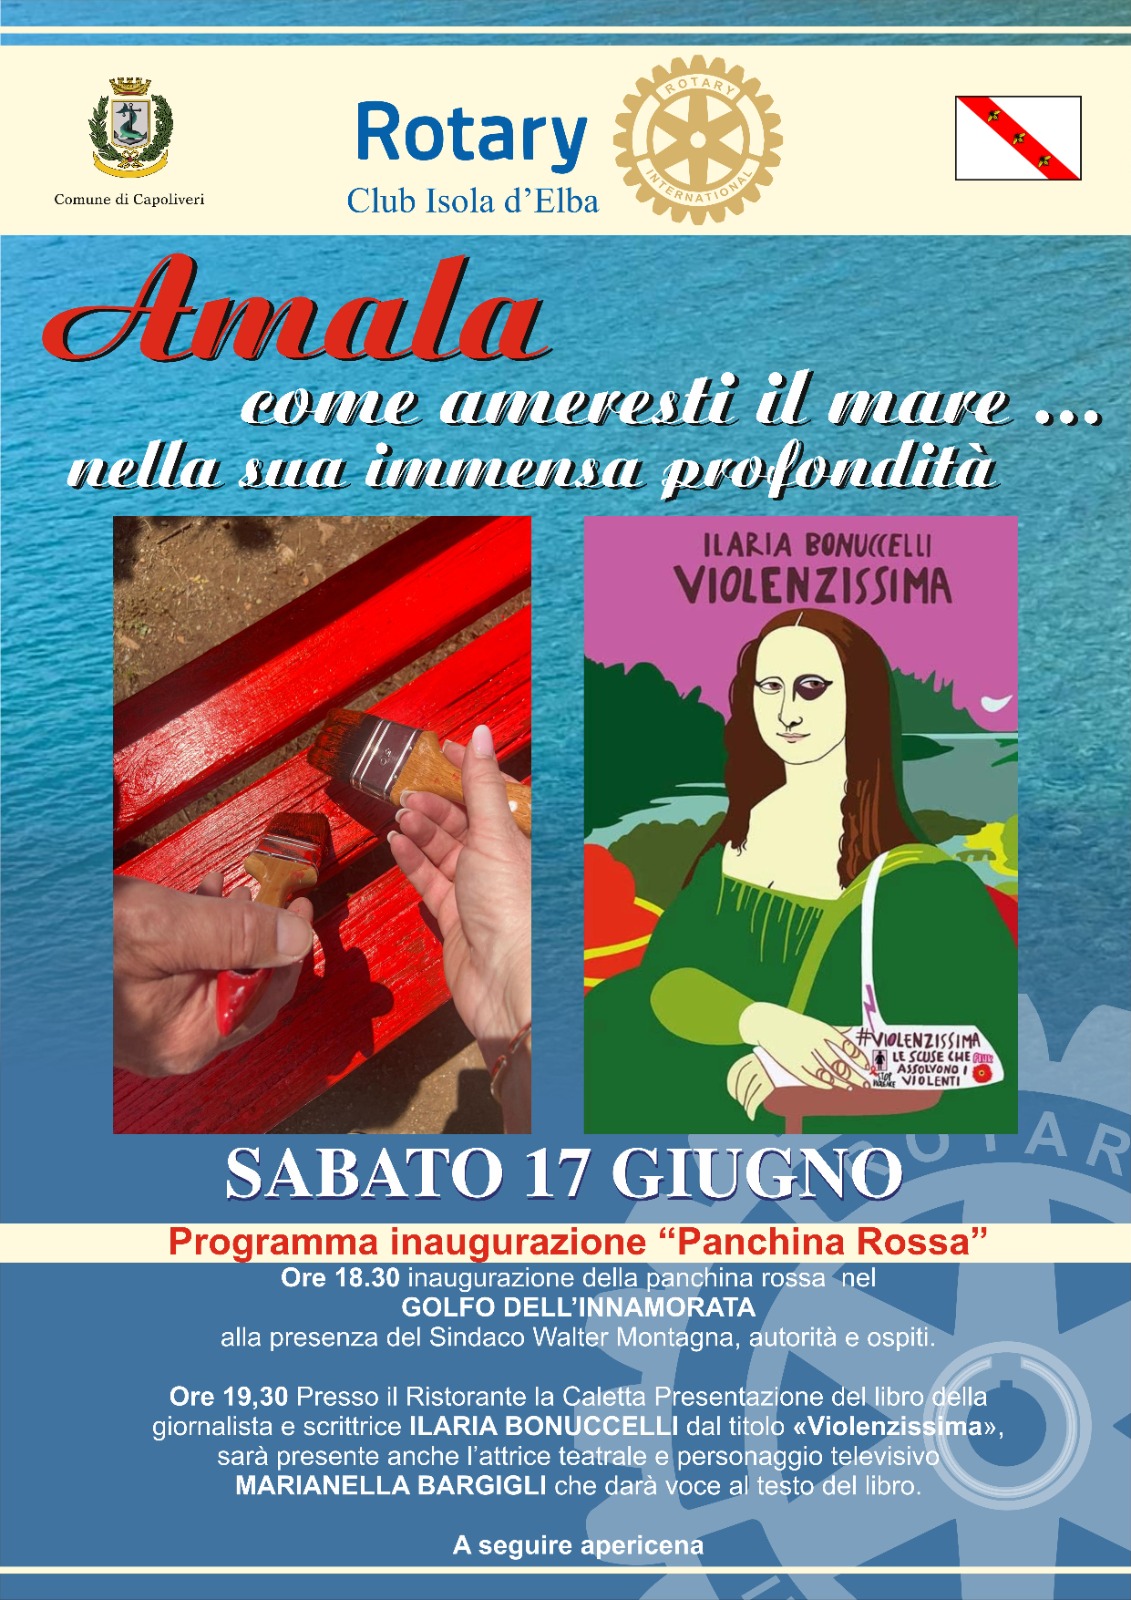 Marianella Bargilli inaugura una Panchina Rossa all’Elba dono di due uomini sabato 17 giugno